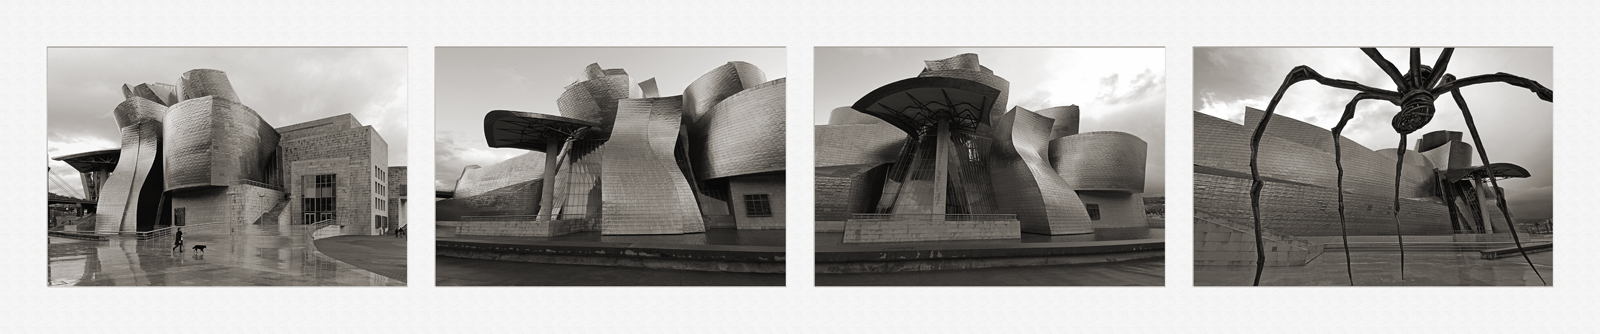 Guggenheim 2-2 selenio (144x30).jpg